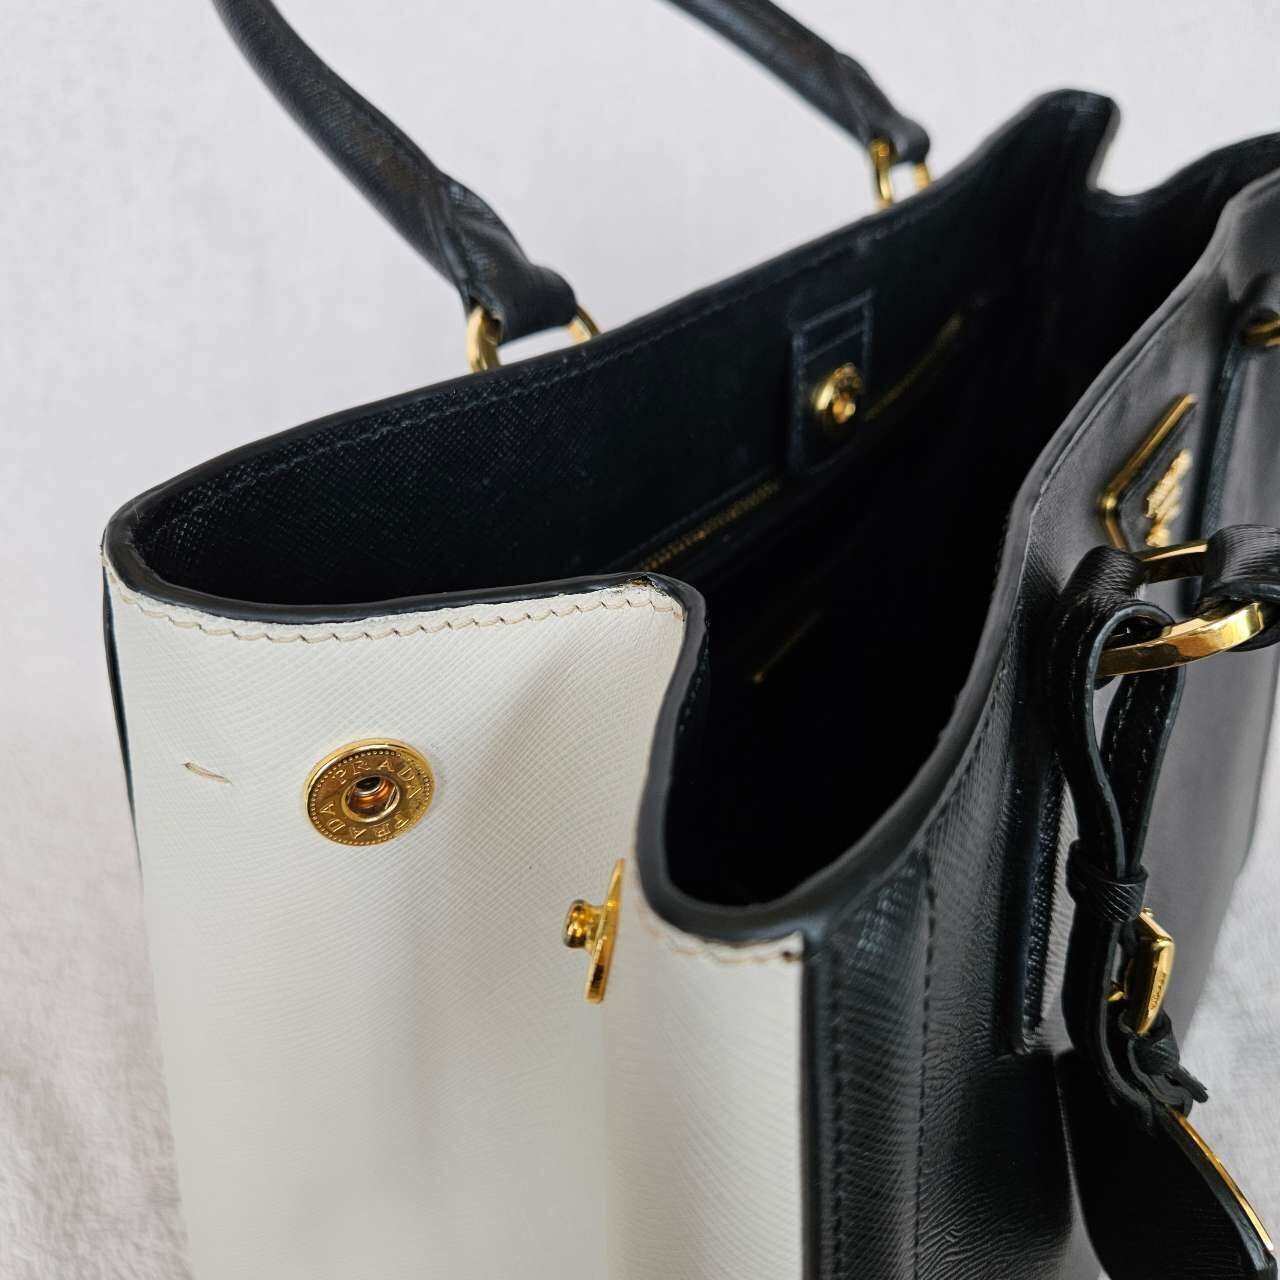 Prada Black & White Handbag